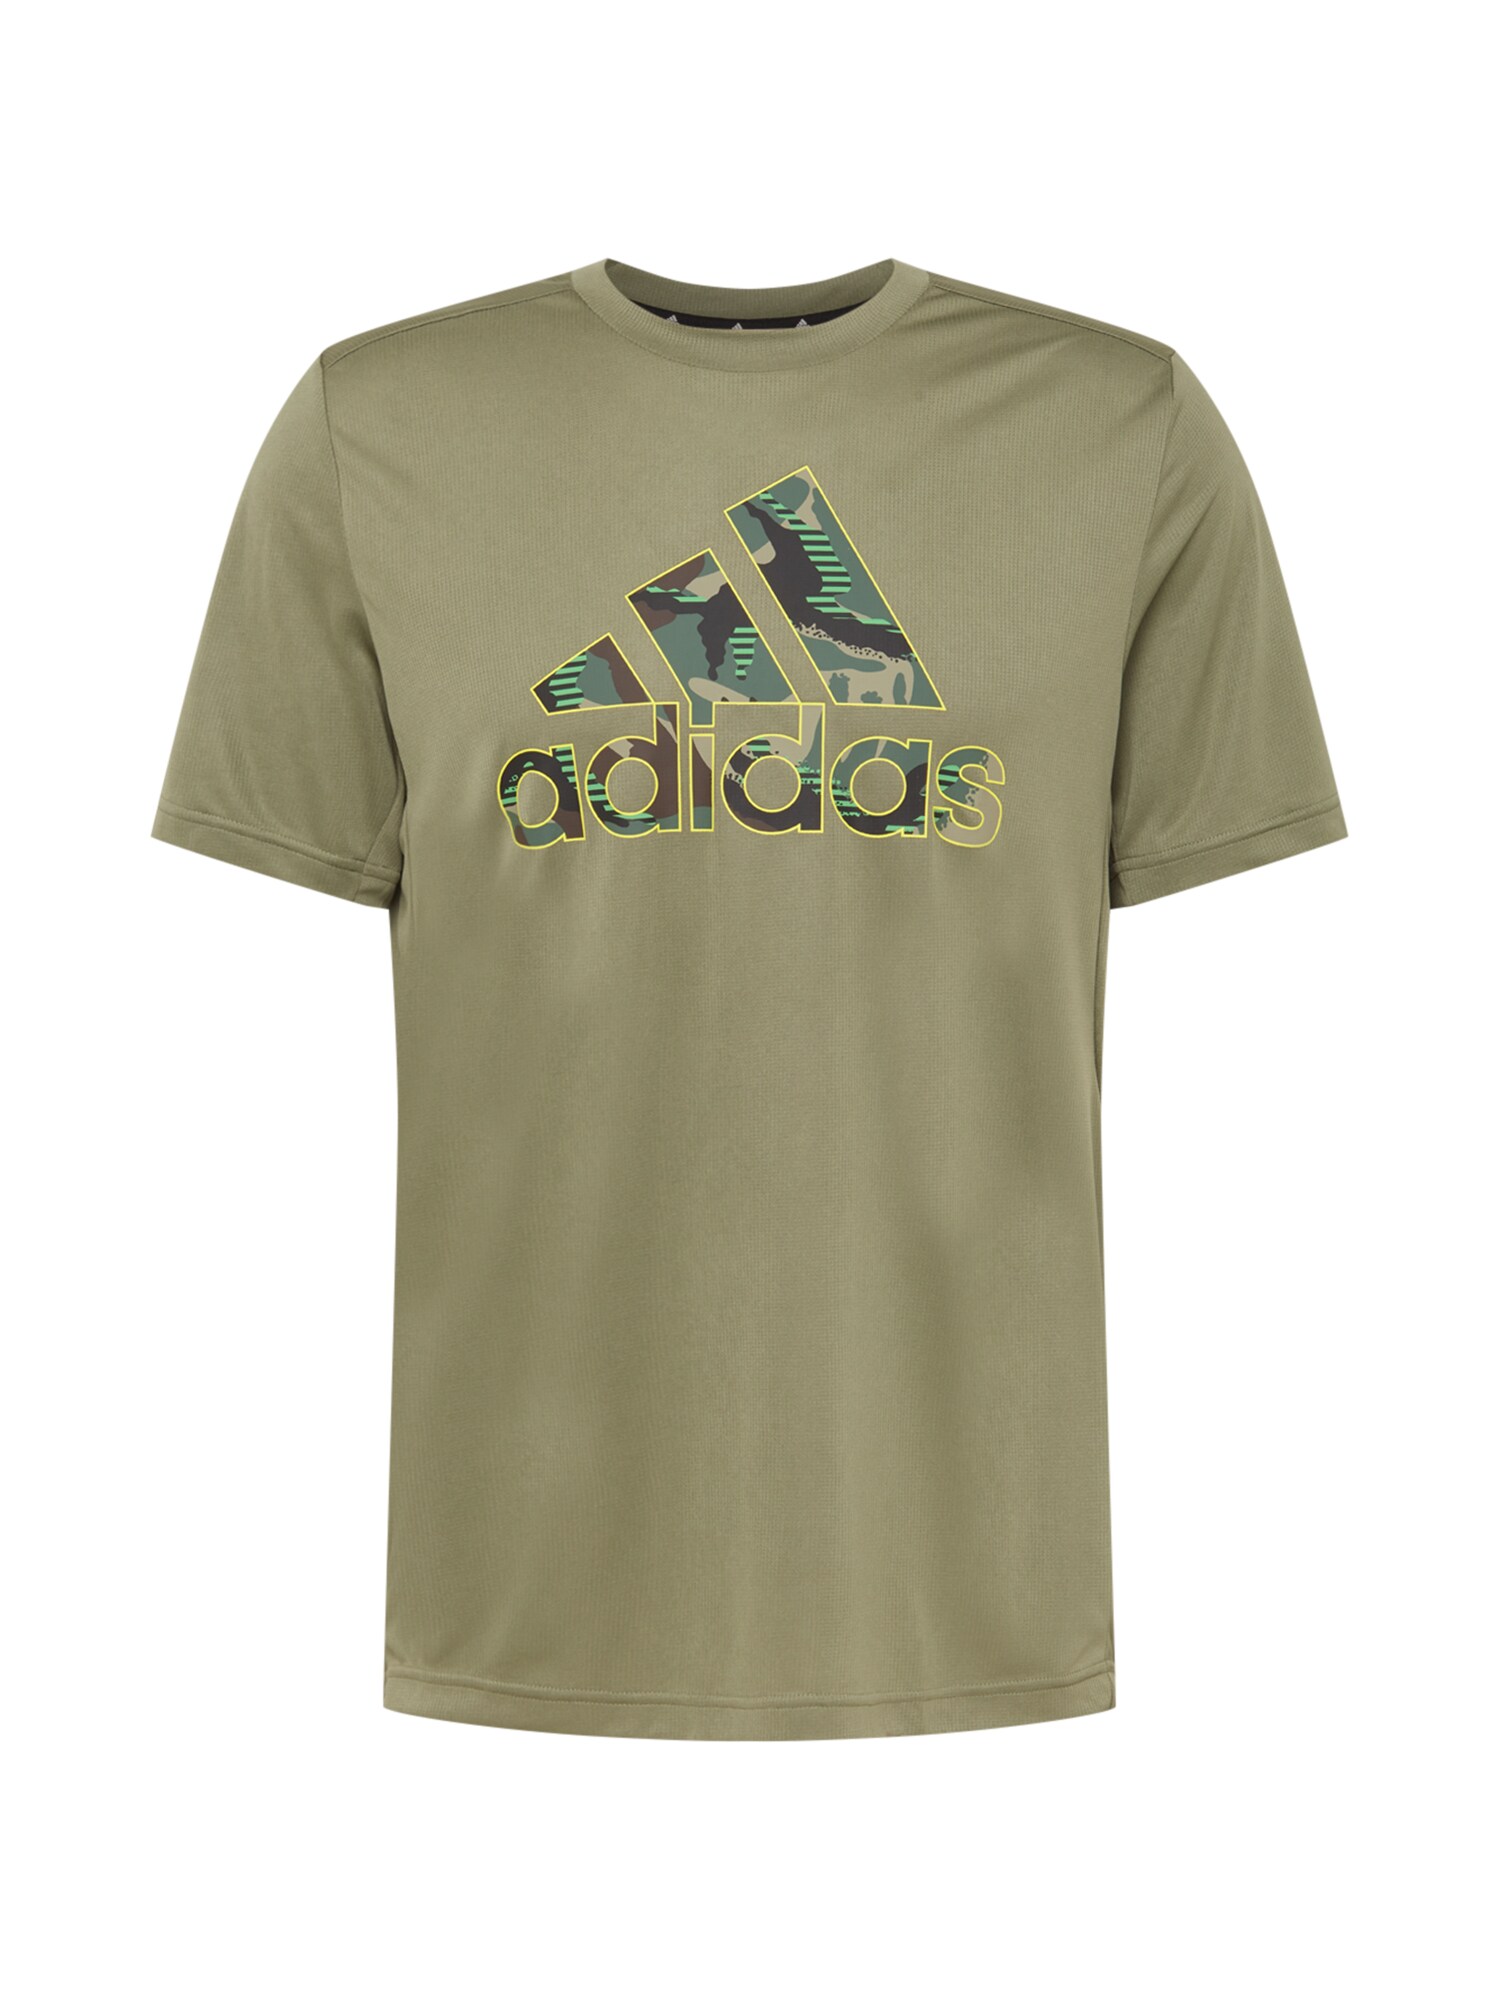 ADIDAS PERFORMANCE Sportiniai marškinėliai  rusvai žalia / mišrios spalvos